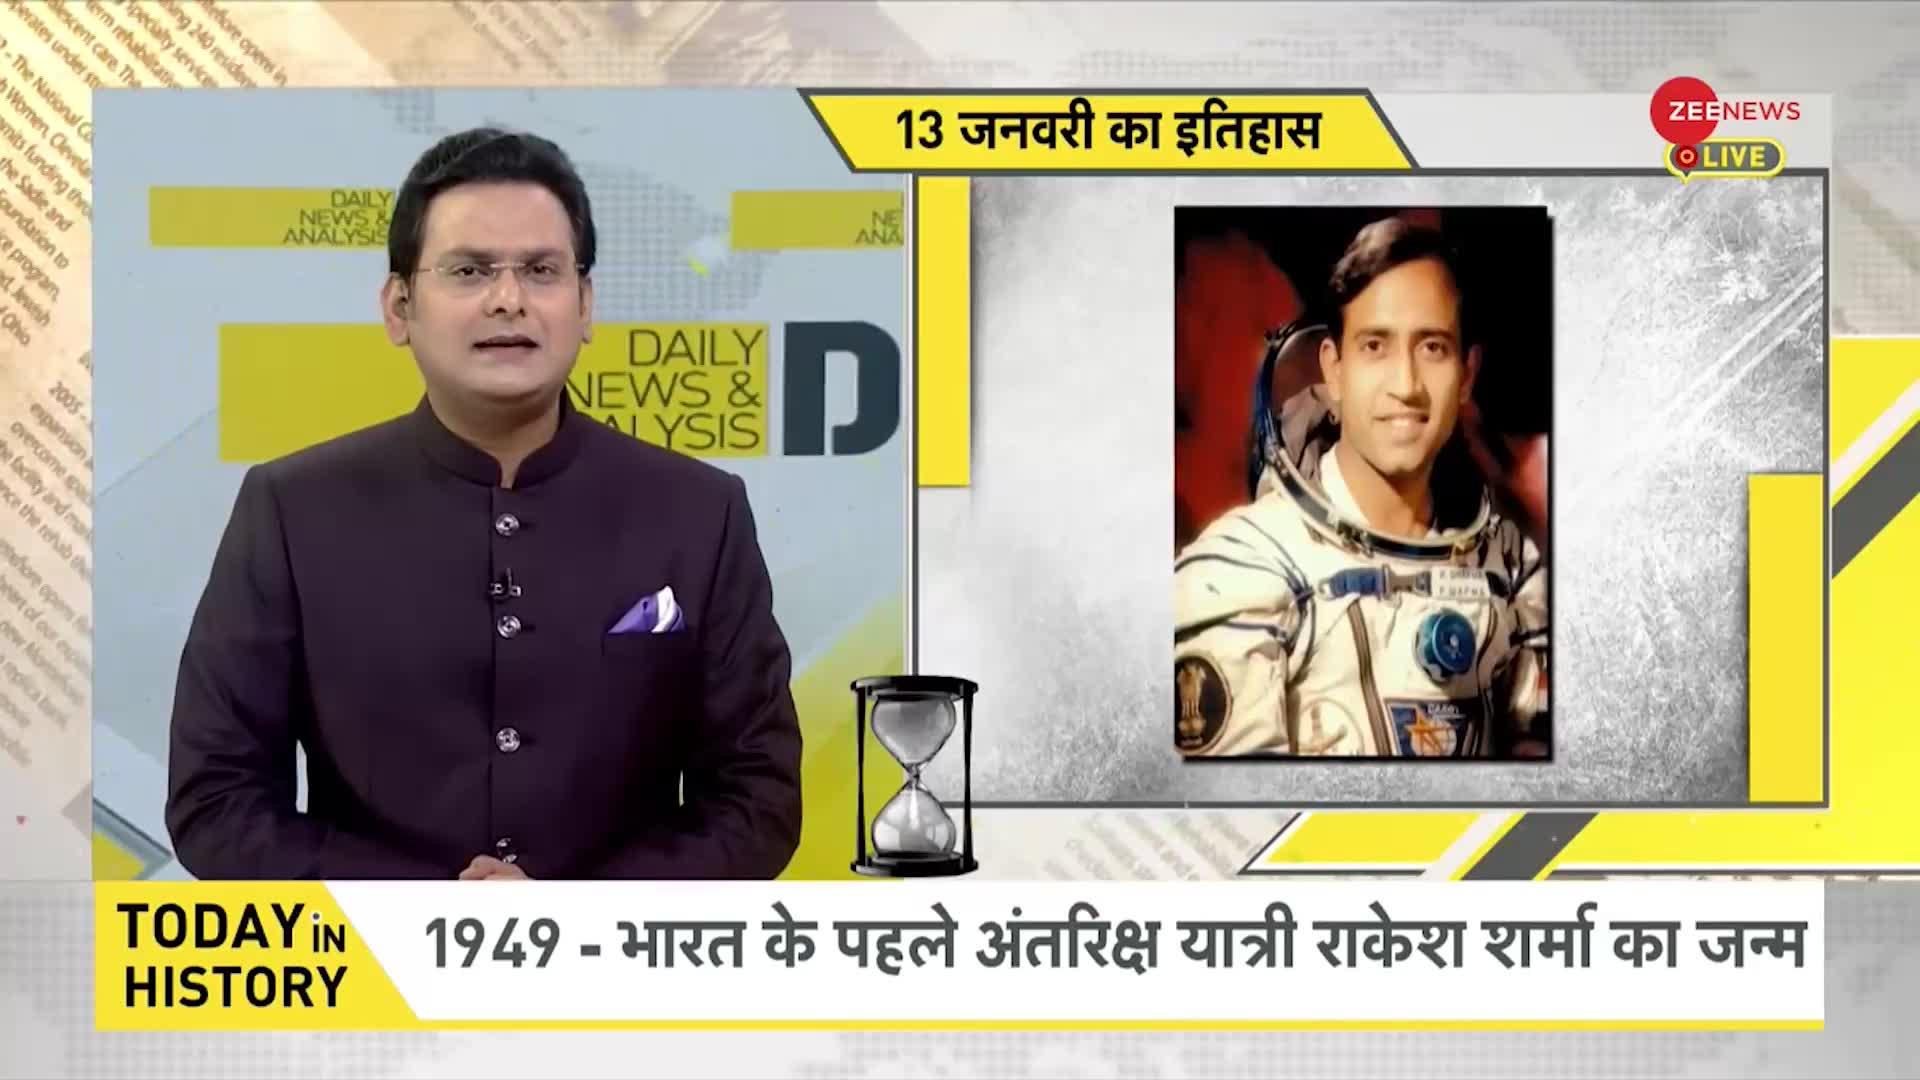 DNA: 1949 में भारत के पहले अंतरिक्ष यात्री राकेश कुमार का जन्म हुआ था